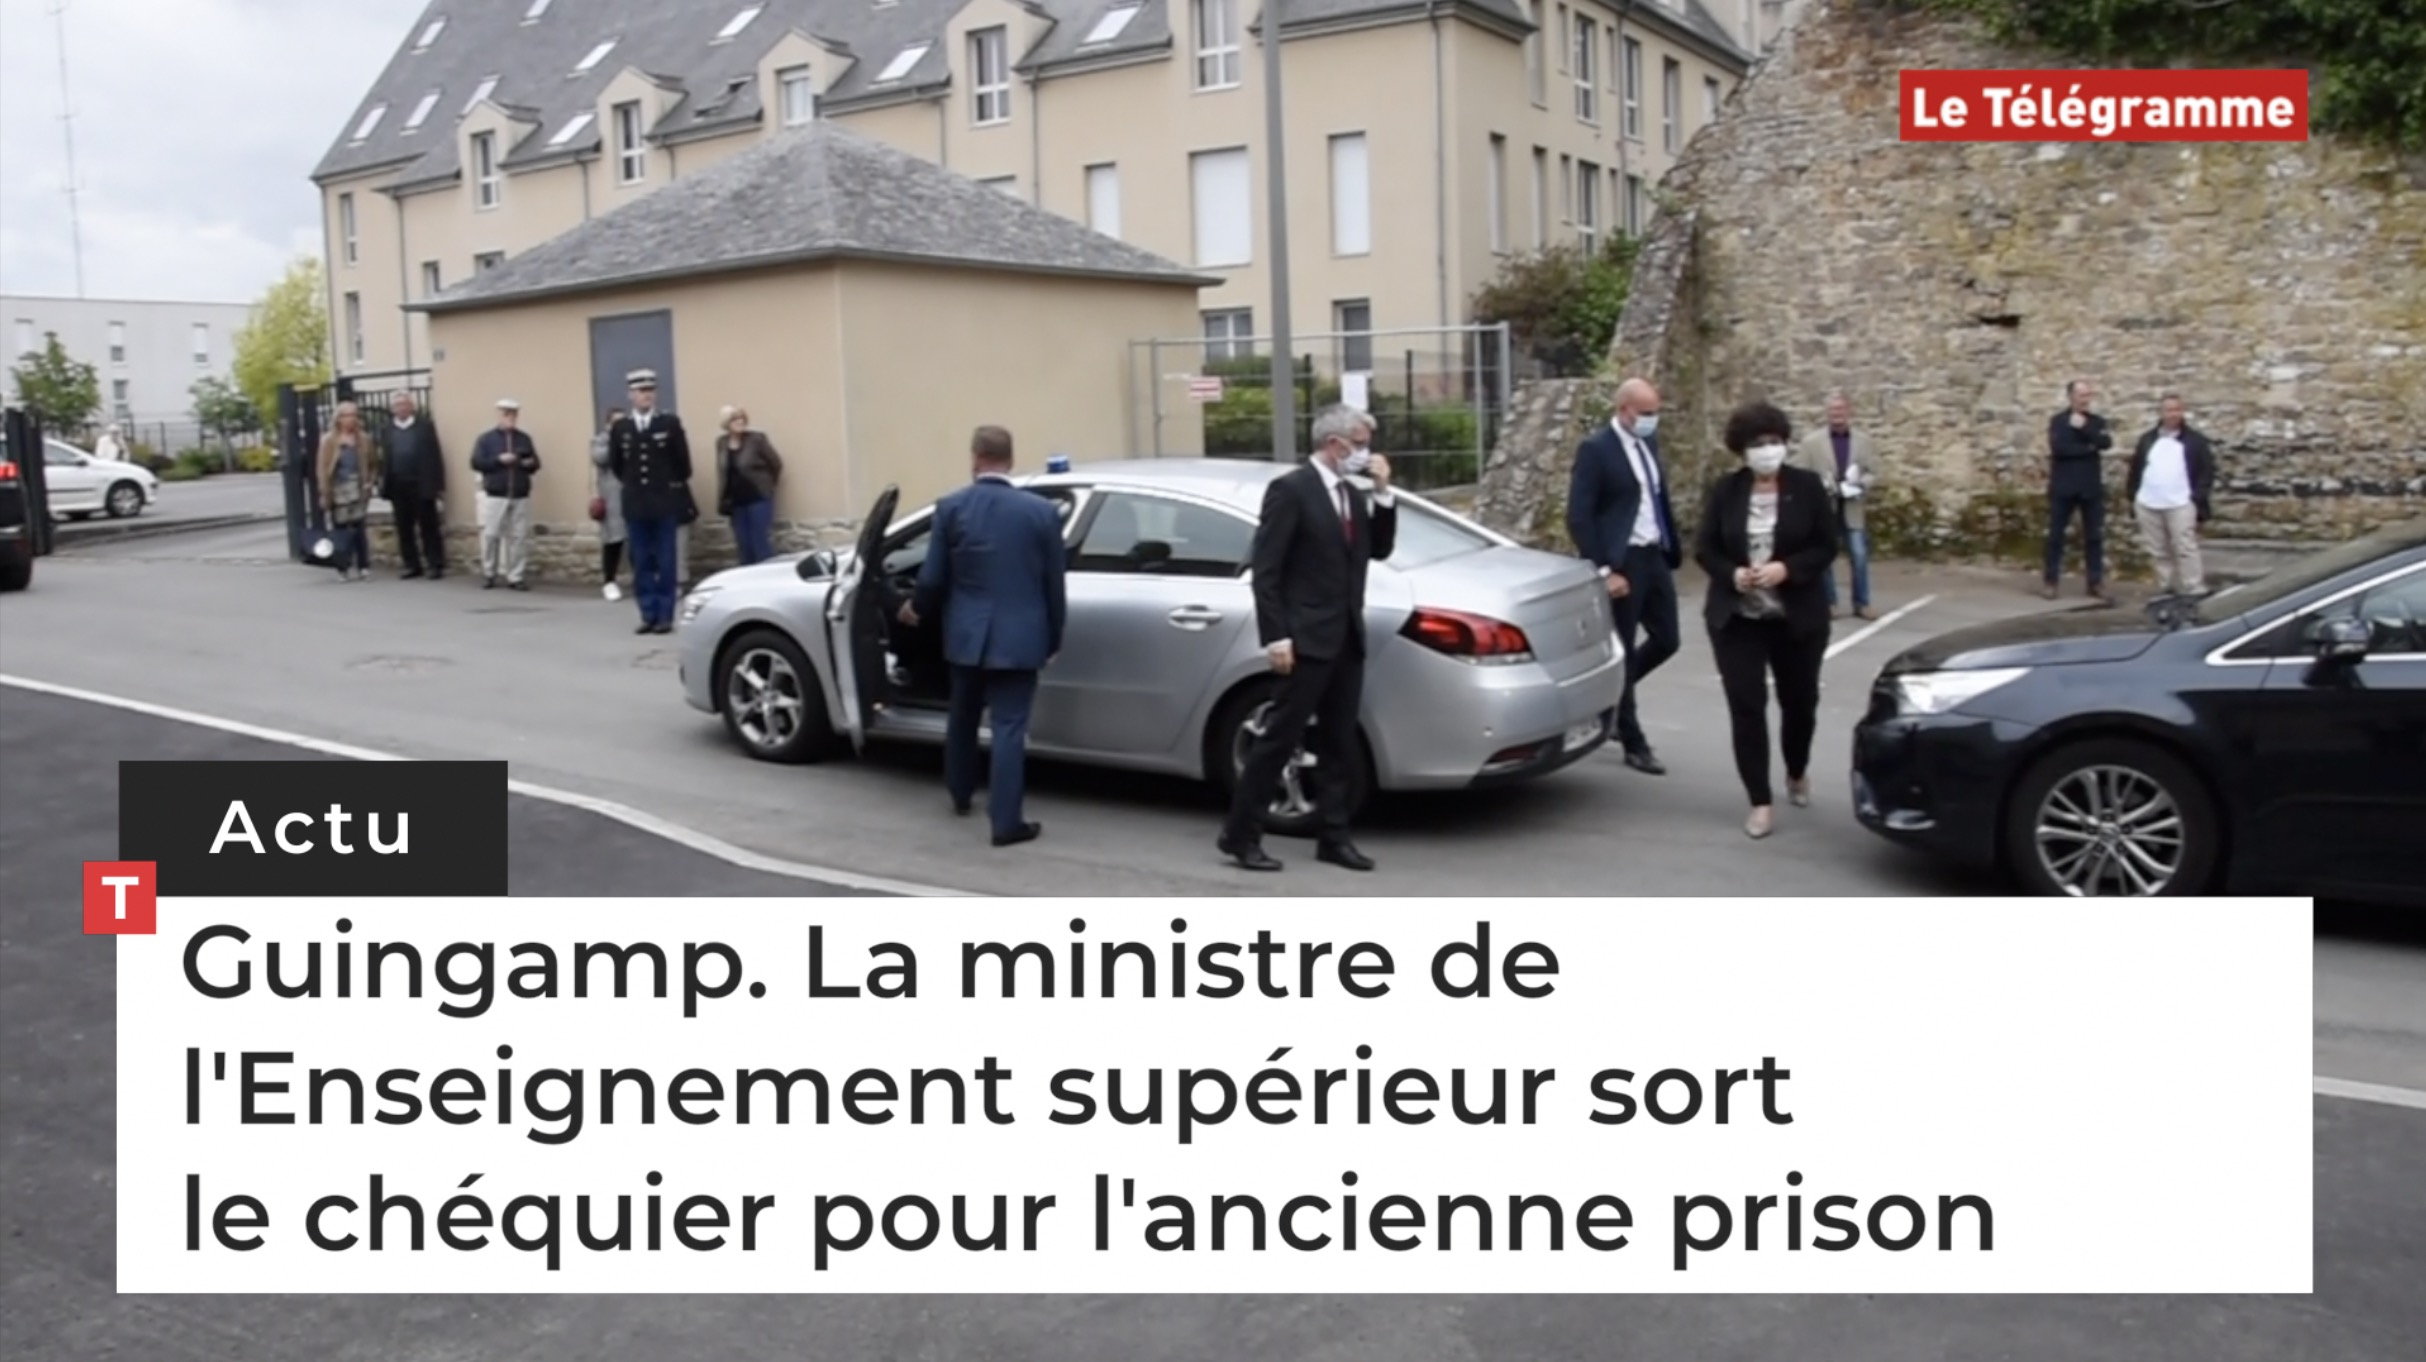 Guingamp. La ministre de l'Enseignement supérieur sort le chéquier pour l'ancienne prison (Le Télégramme)